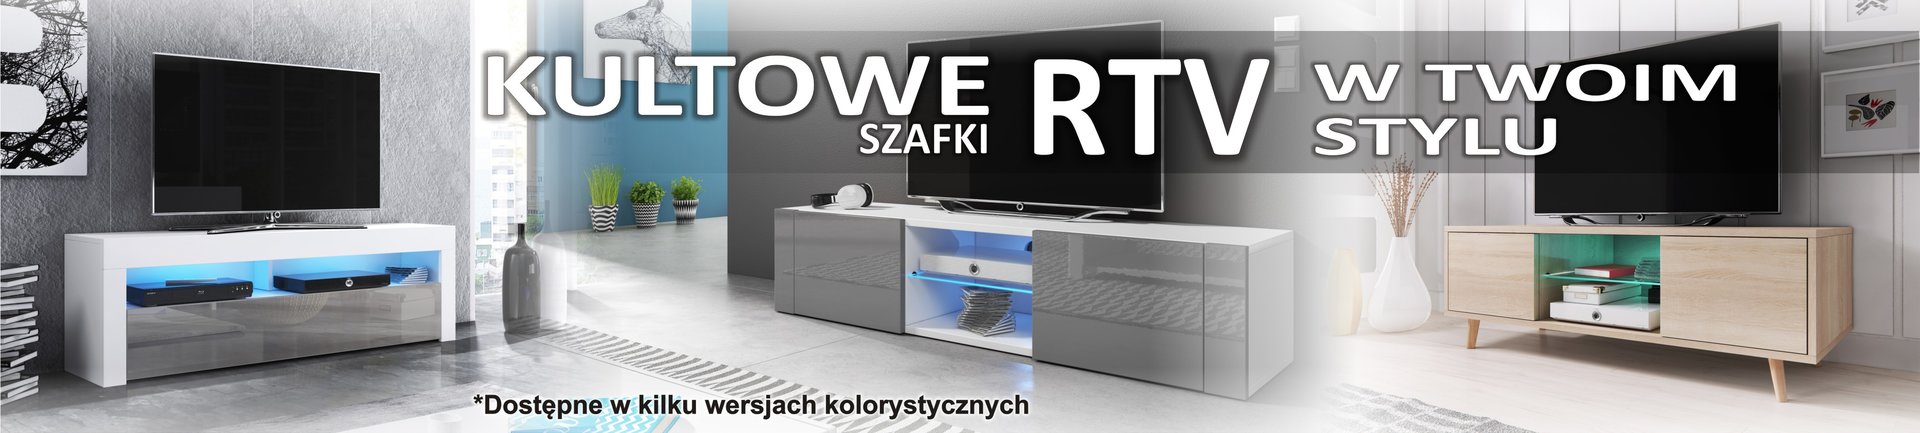 SZAFKI RTV 